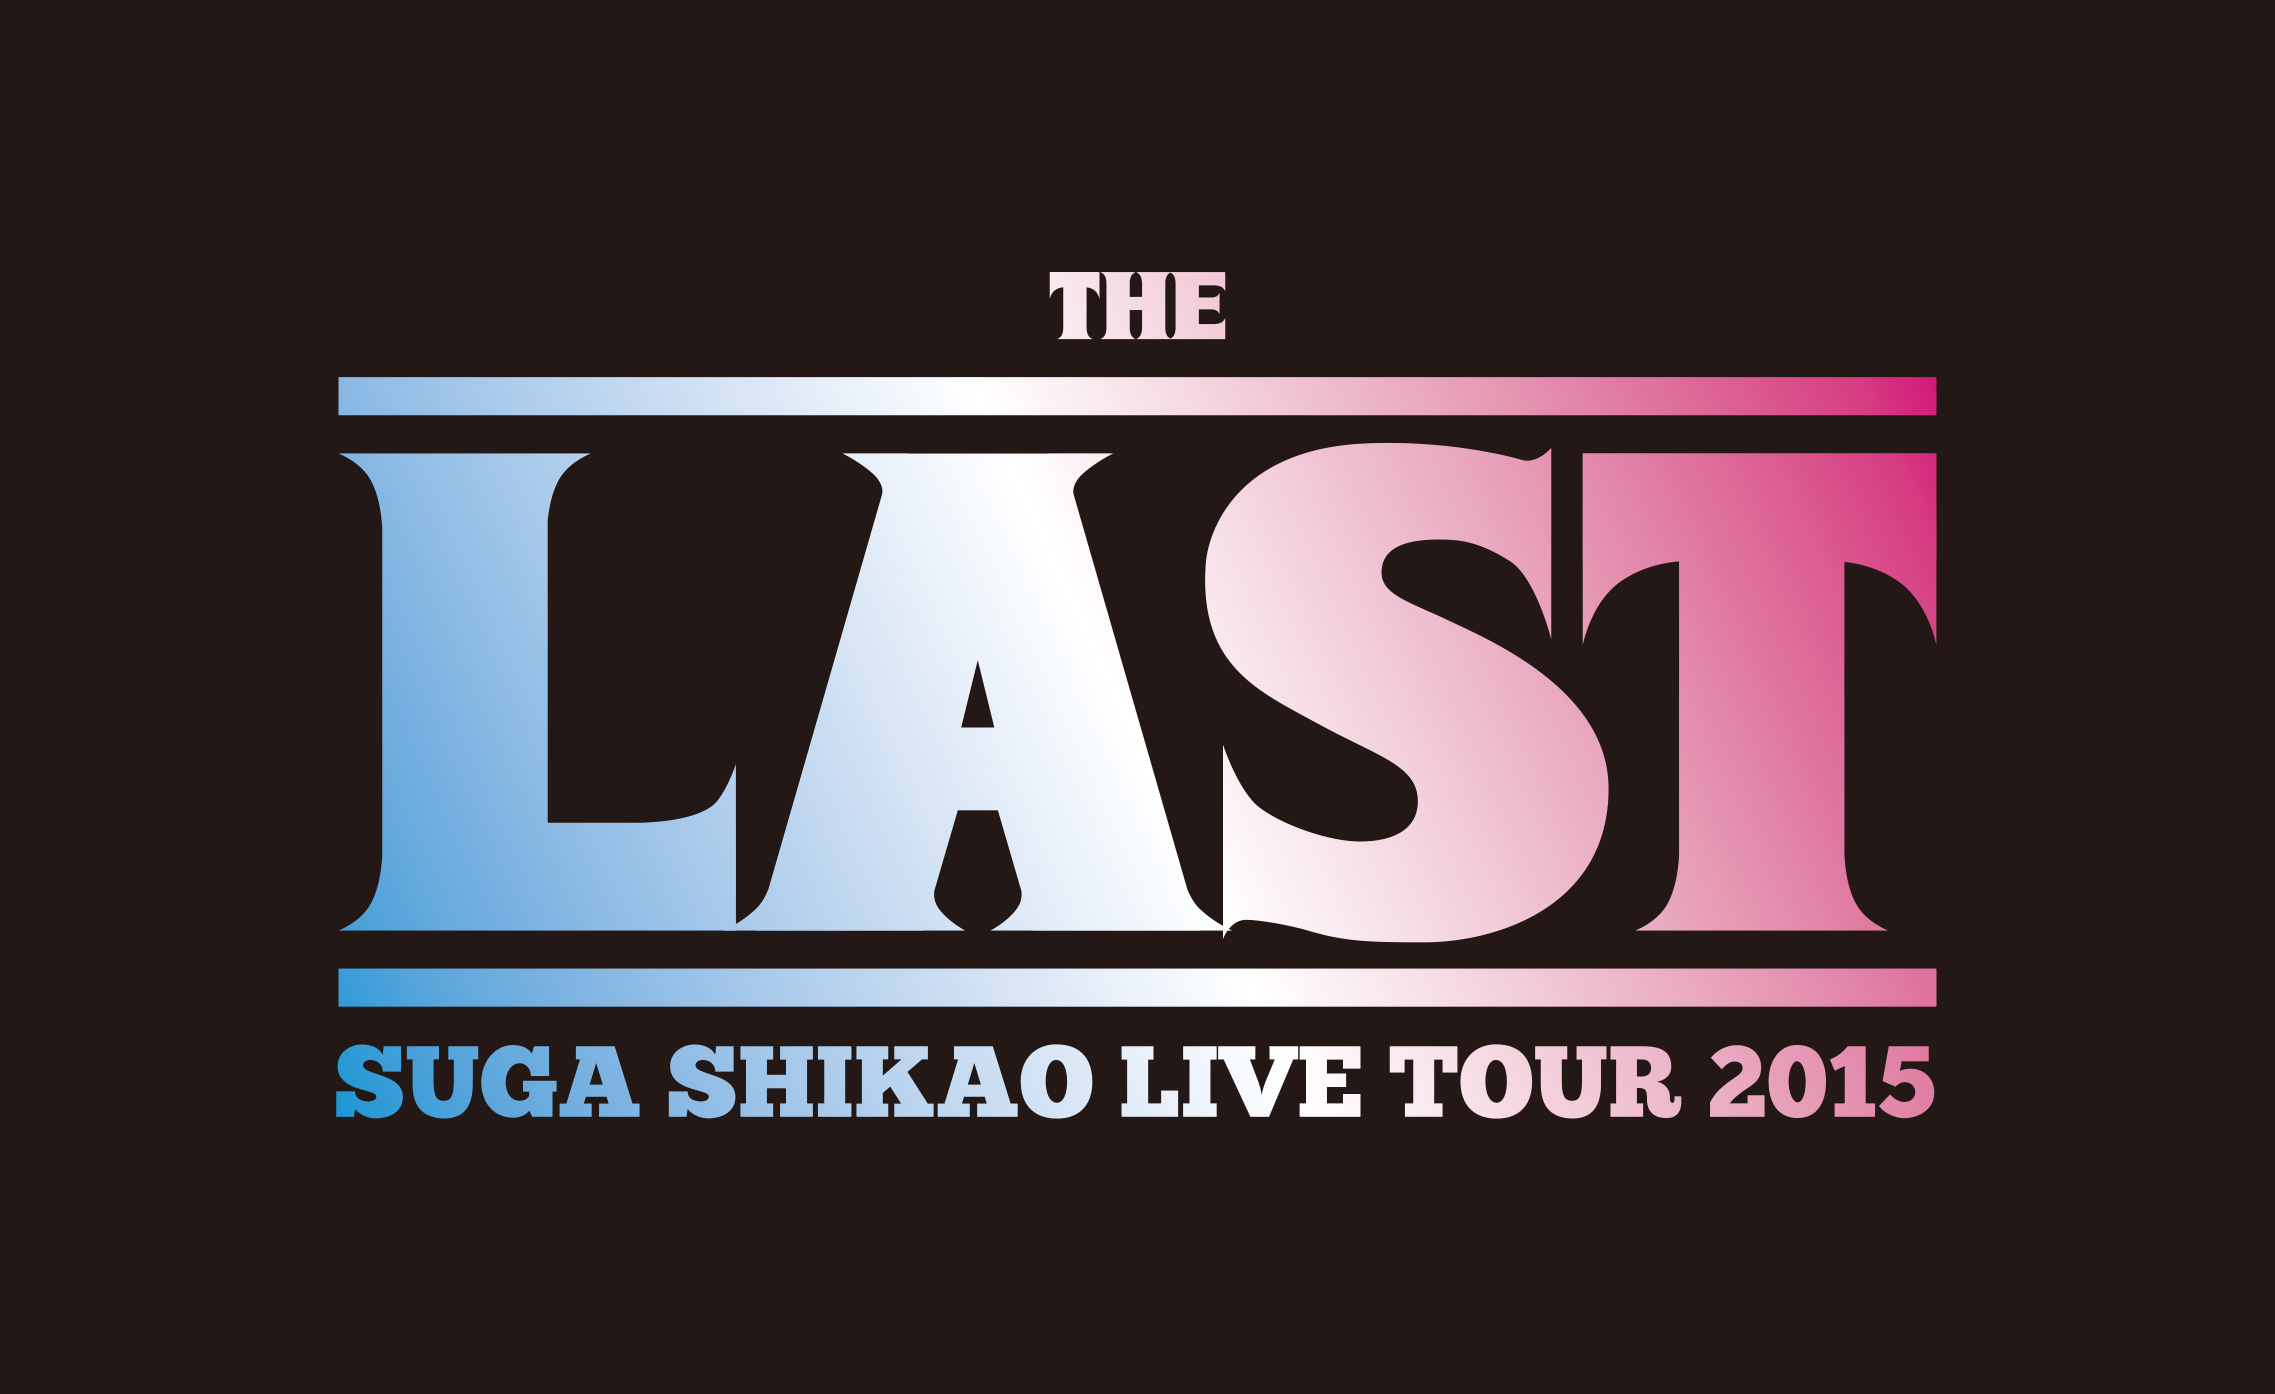 スガシカオ 「THE LAST」LIVE TOUR 2015 